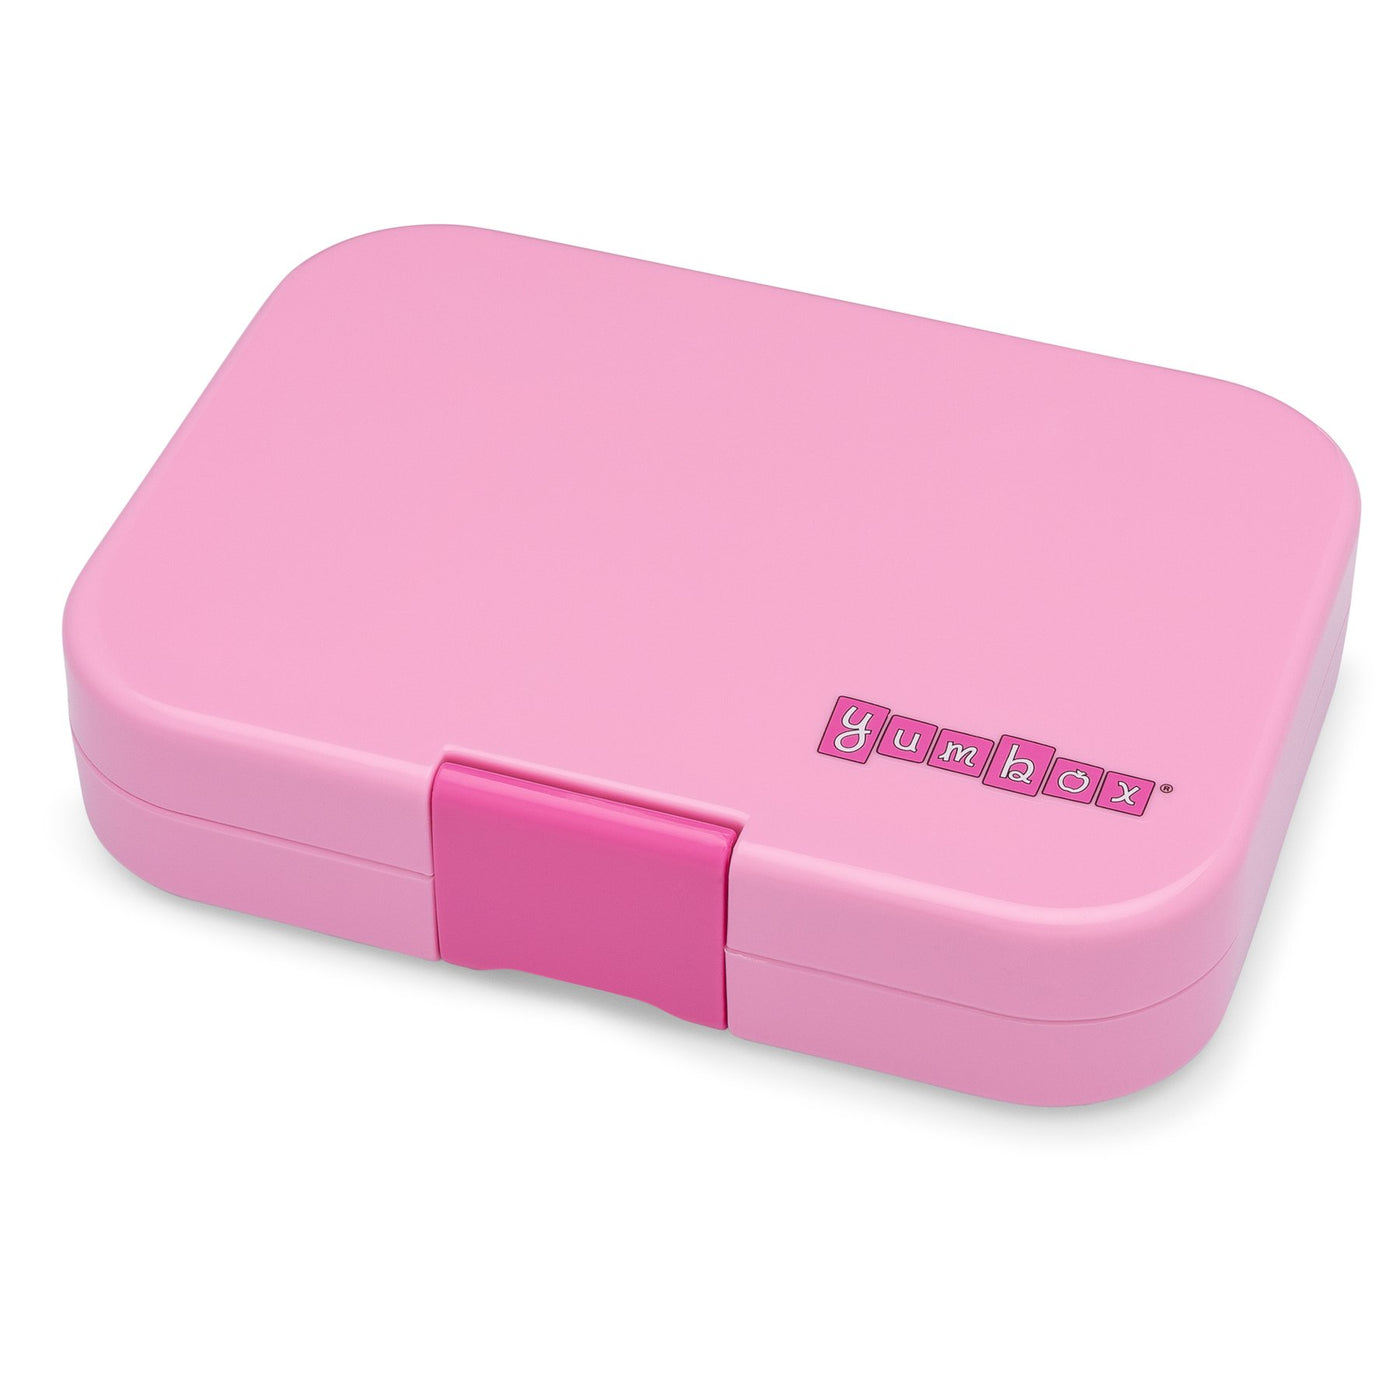 YumBox Panino: Power Pink (Rainbow Tray)